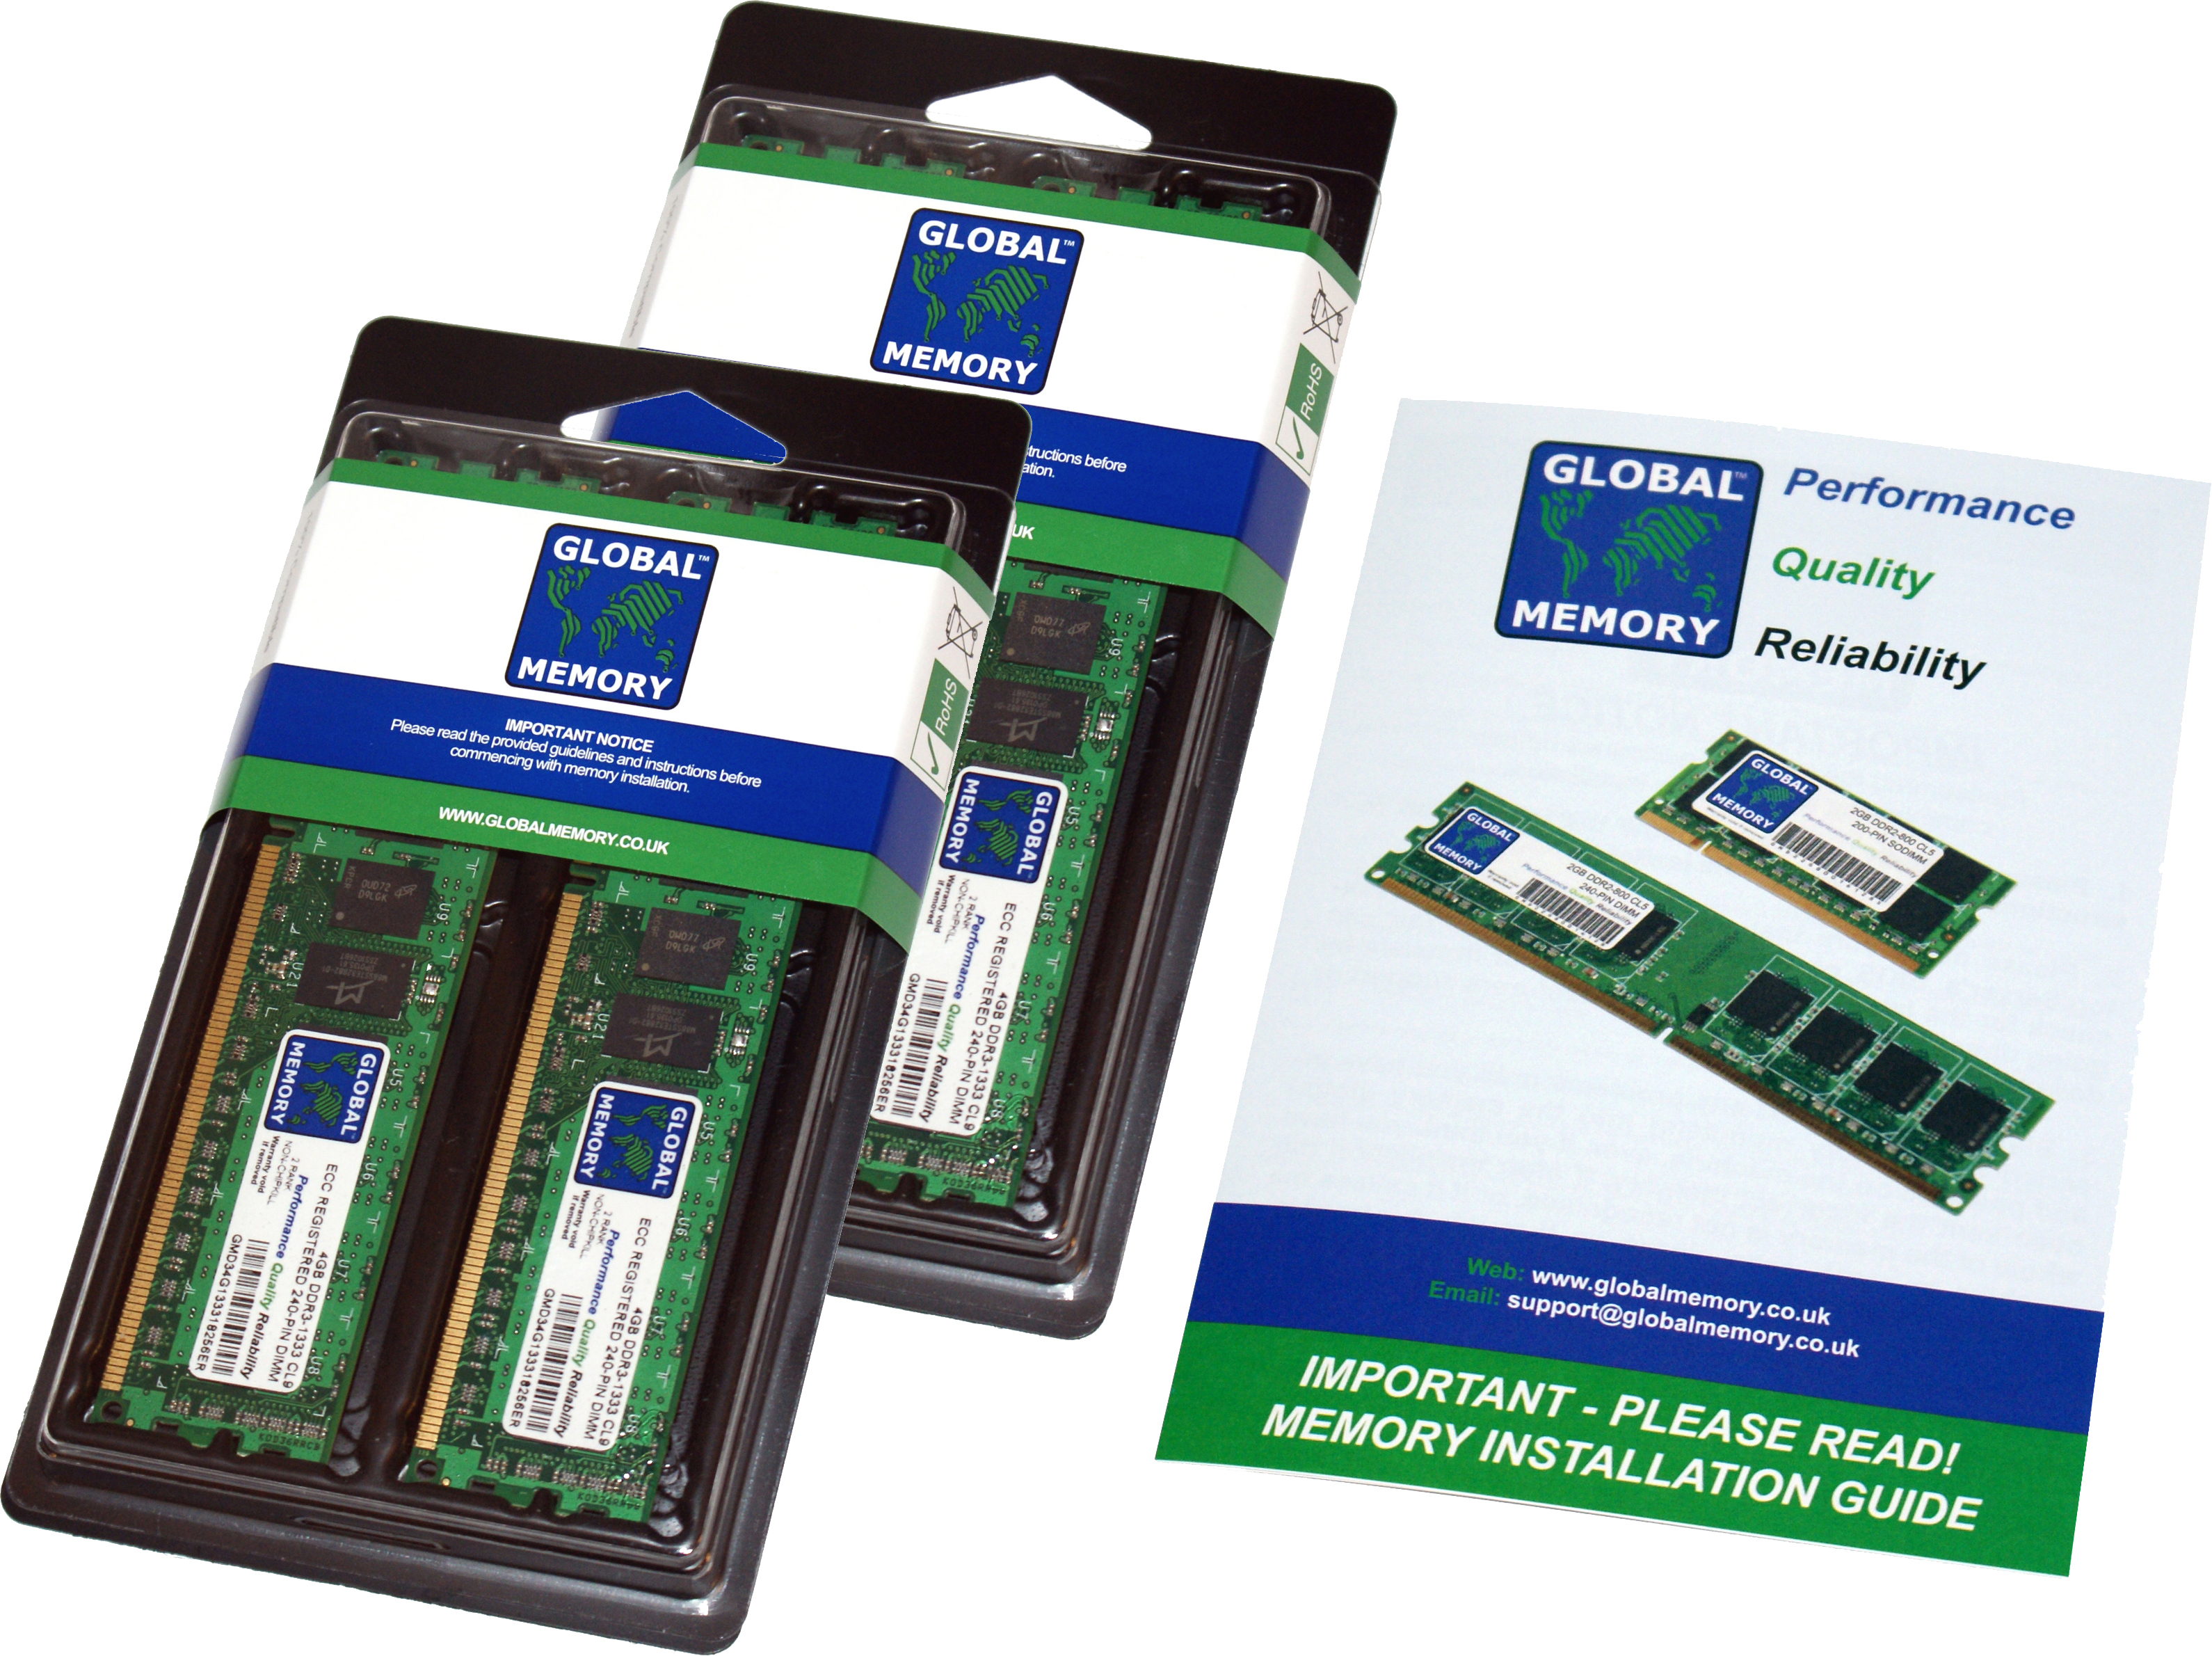 32GB (4 x 8GB) DDR4 2400MHz PC4-19200 288-PIN ECC REGISTERED DIMM (RDIMM) MEMORY RAM KIT FOR HEWLETT-PACKARD SERVERS/WORKSTATIONS (4 RANK KIT CHIPKILL)